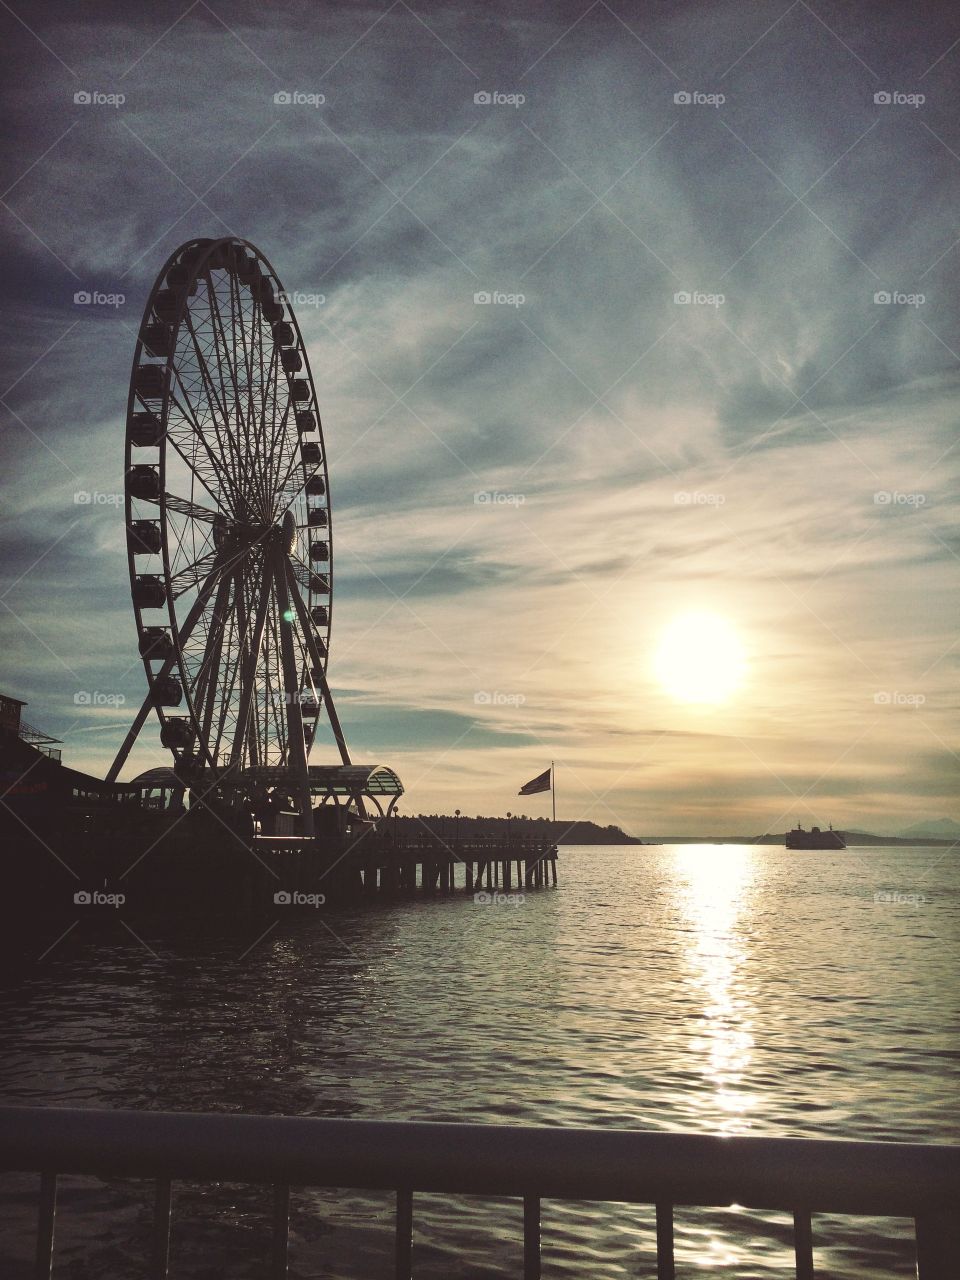 Wheel of Seattle